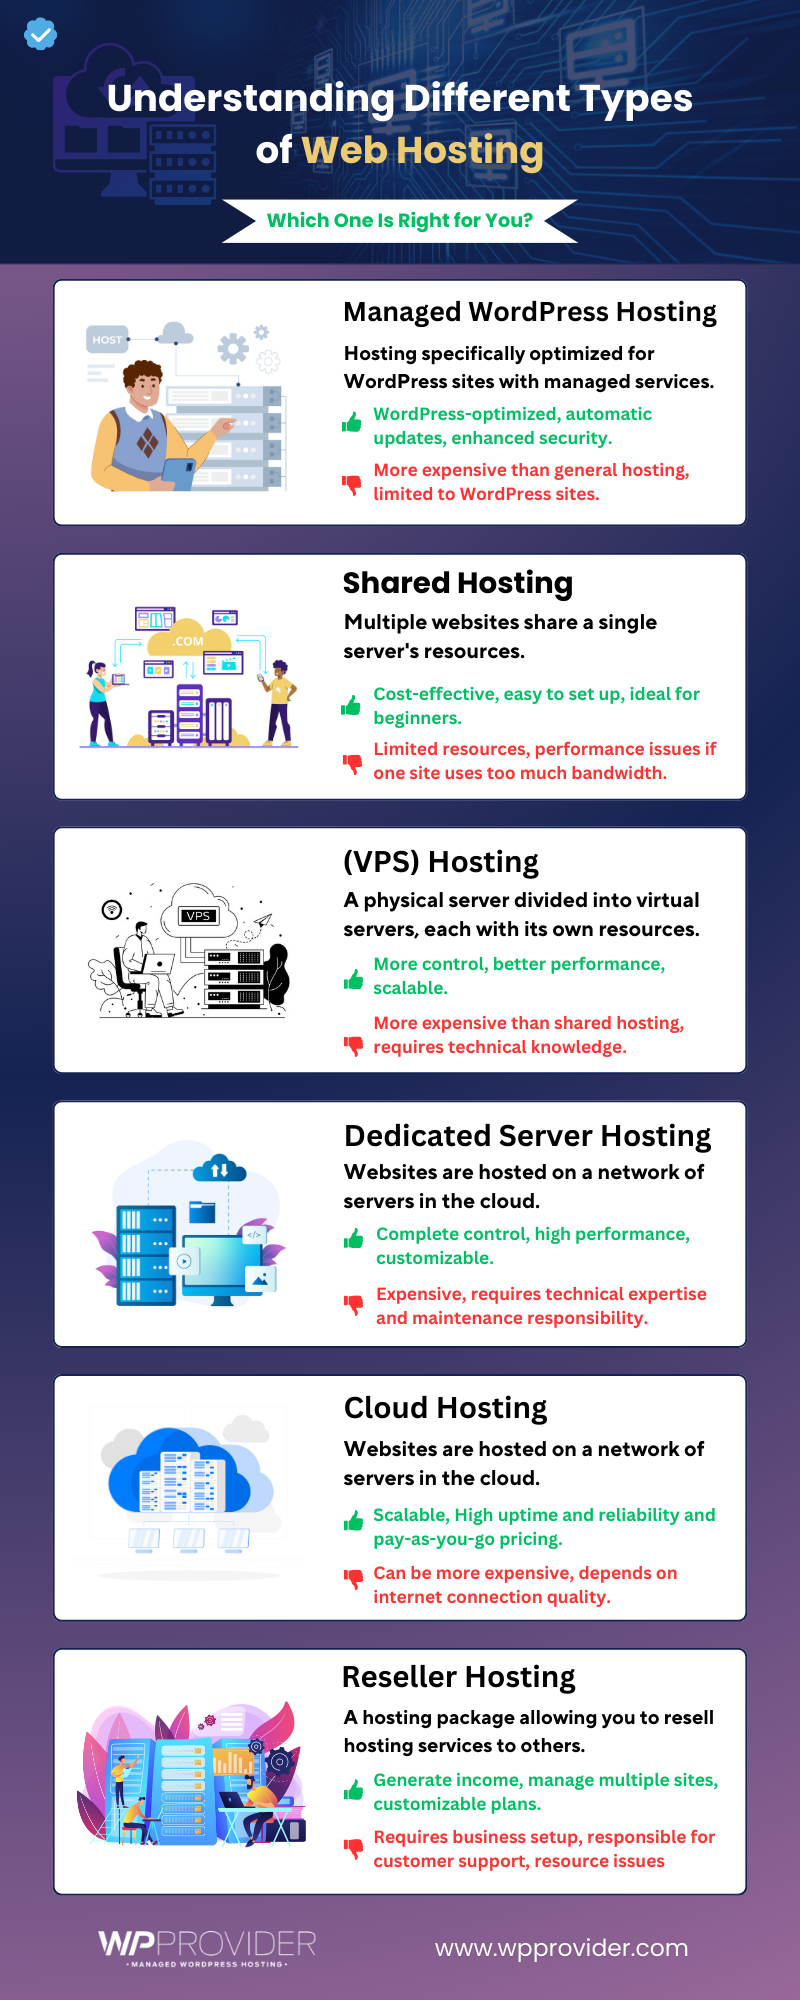 Types of Web Hostings